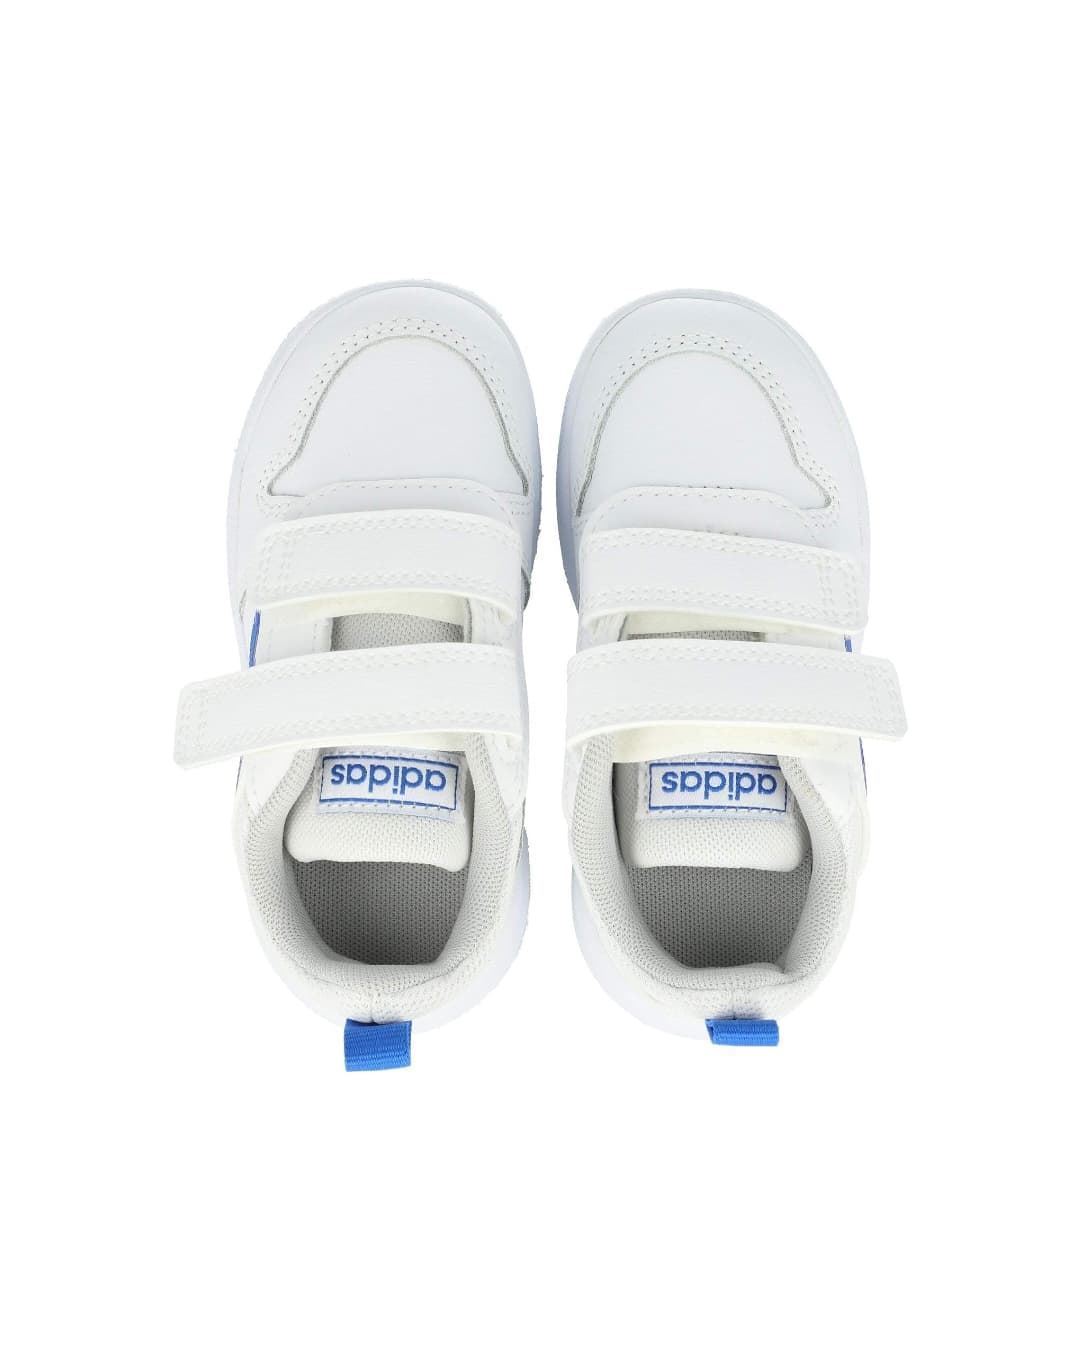 Adidas zapatillas para niños Tensaur I Blanco Azul - Imagen 2